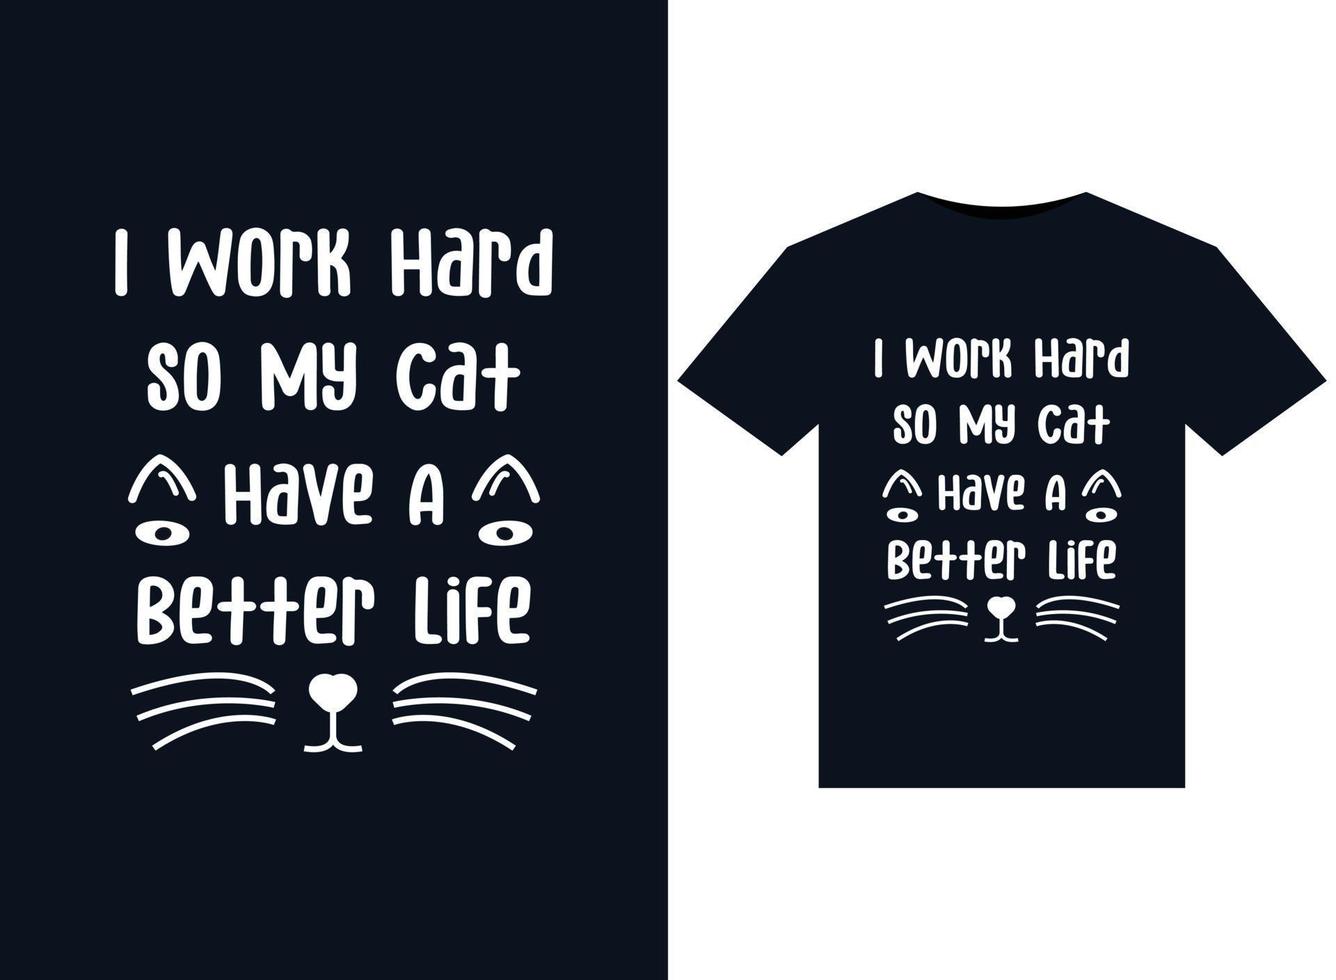 ich arbeite hart, damit meine katze ein besseres leben hat illustrationen für druckfertige t-shirt-designs vektor